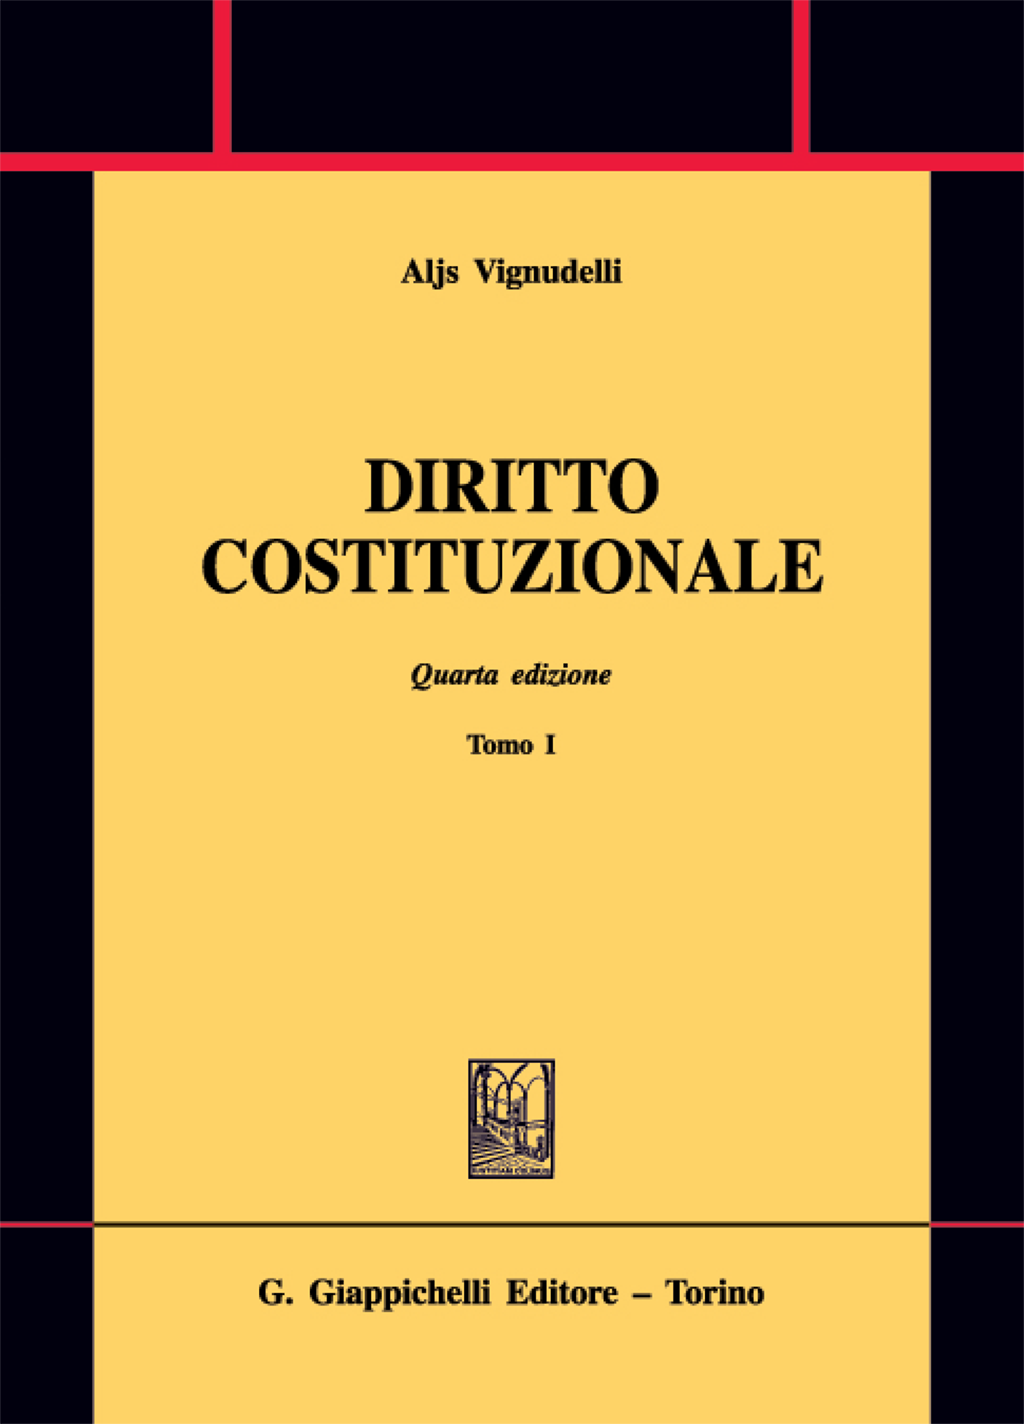 Aljs Vignudelli - Diritto costituzionale IV edizione